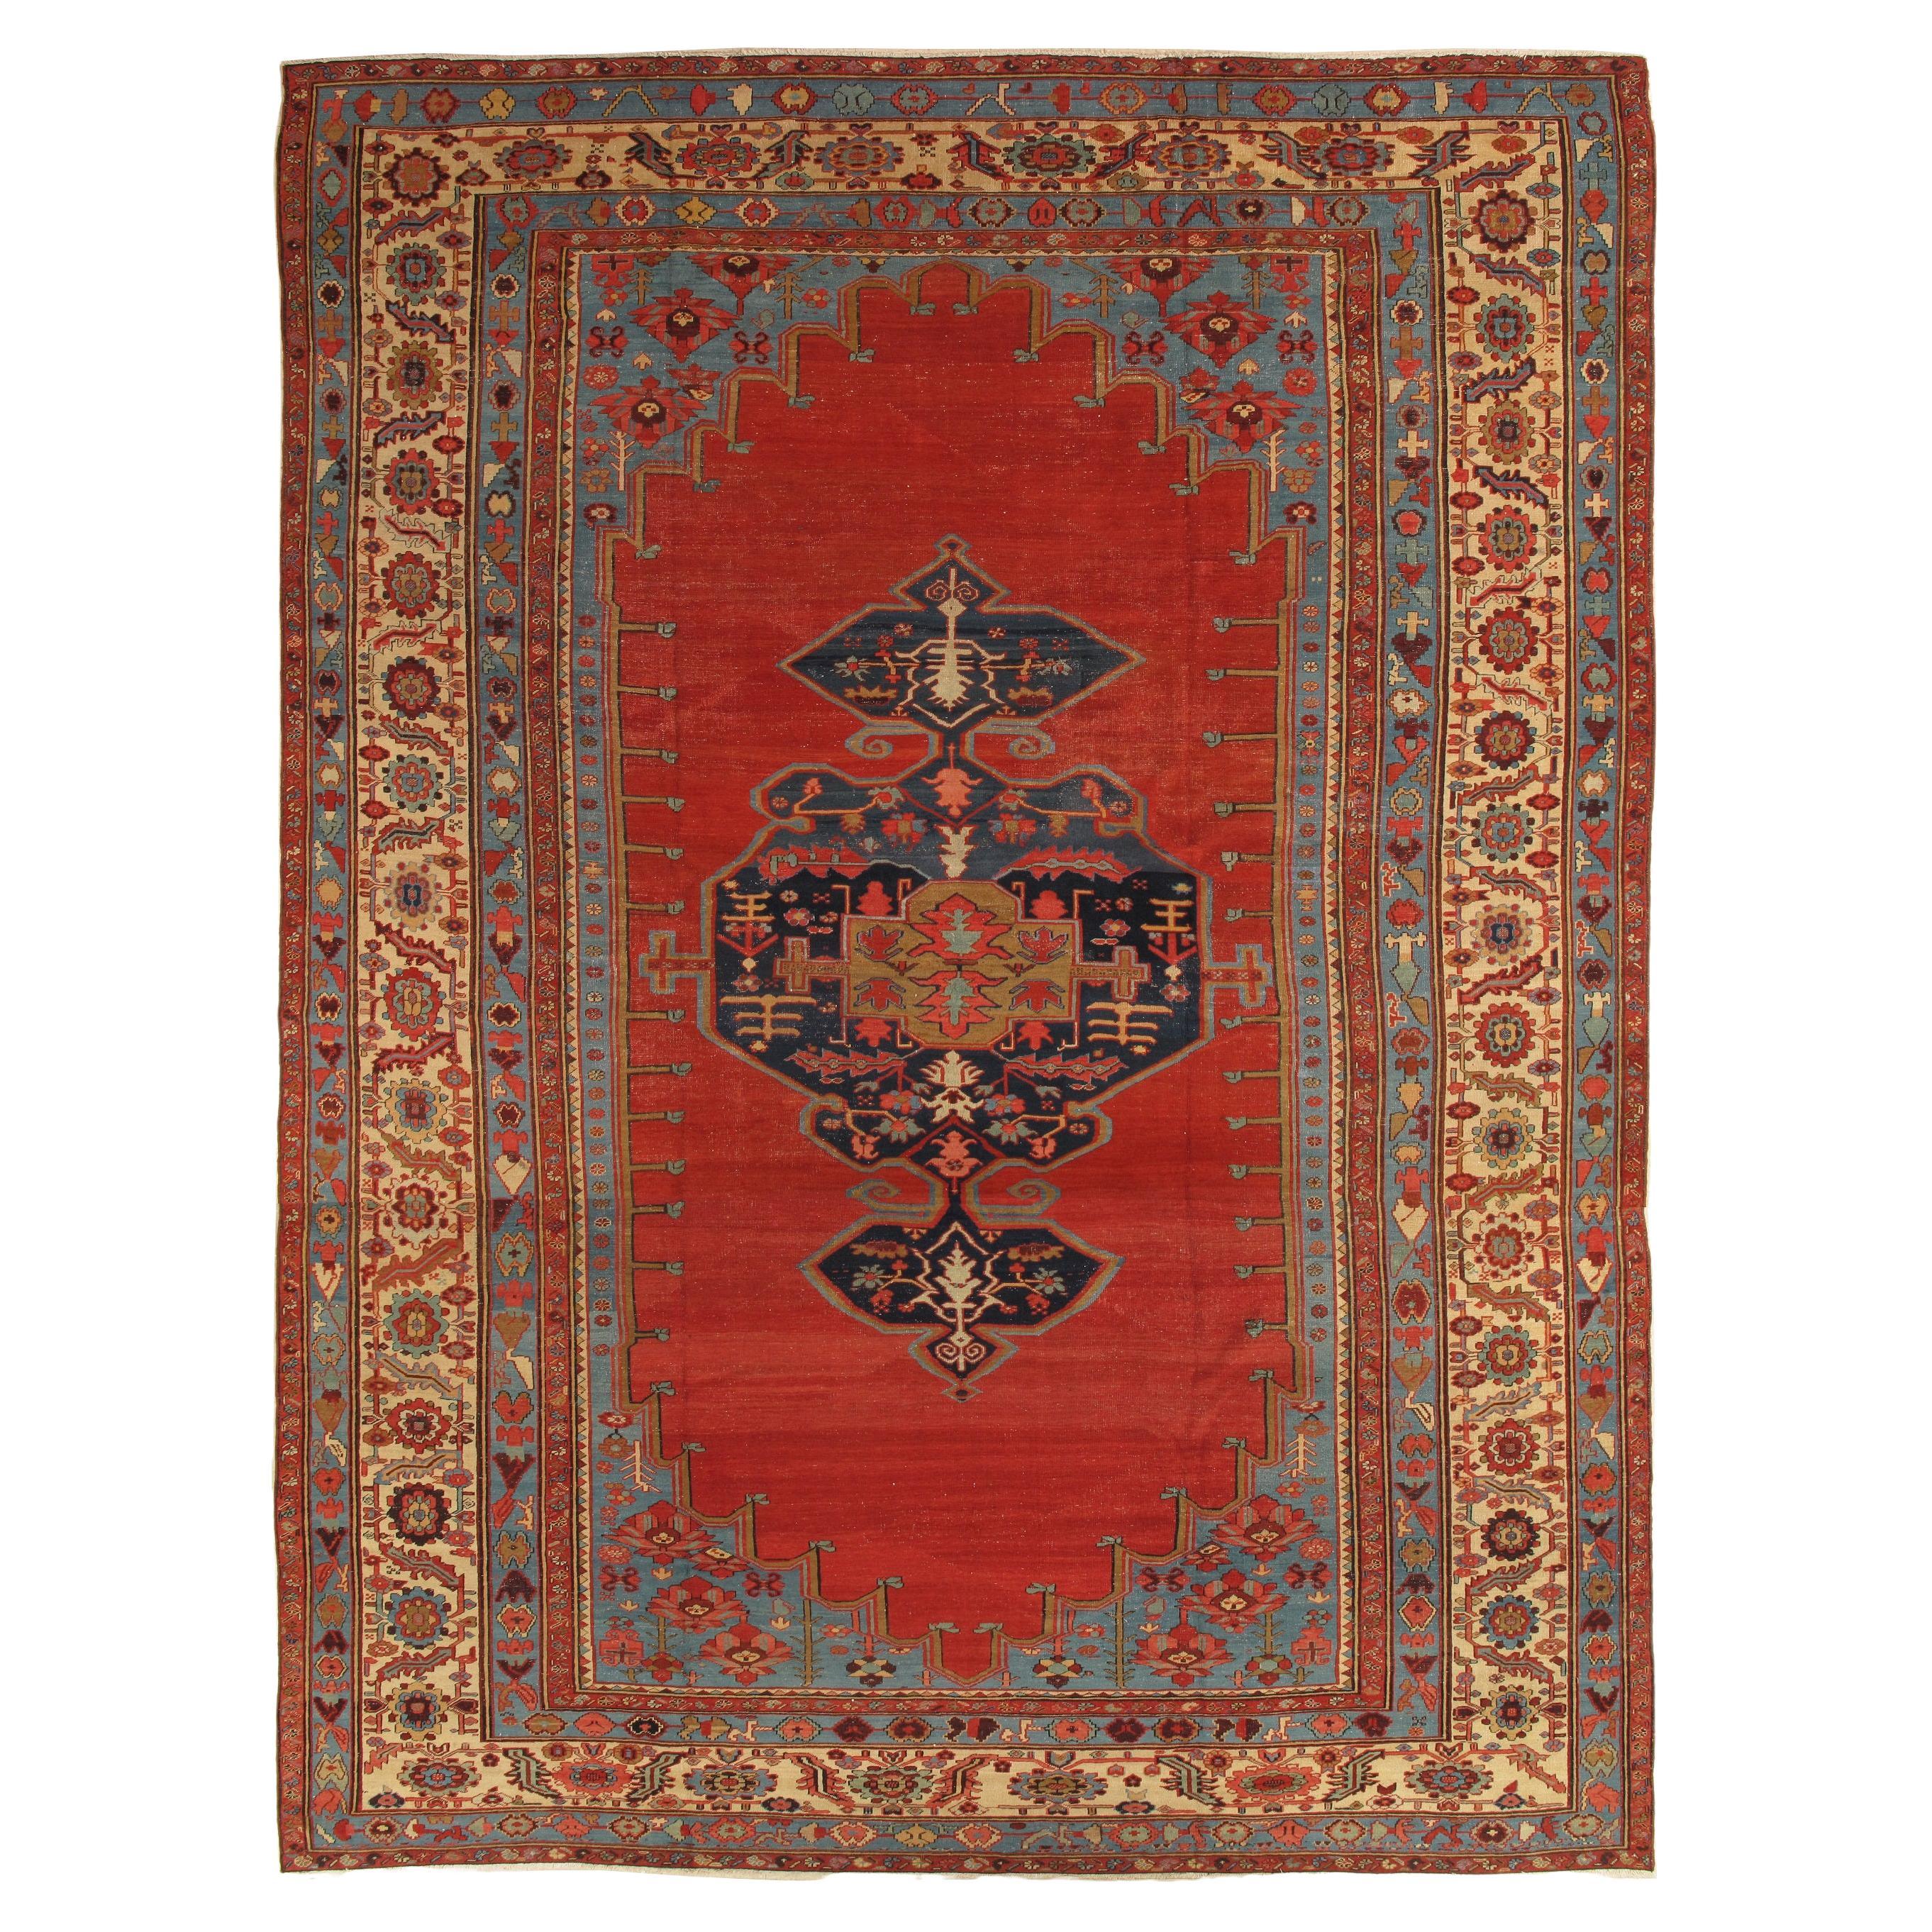 Tapis persan oriental ancien Bakshaish, fabriqué à la main en ivoire, bleu et rouge